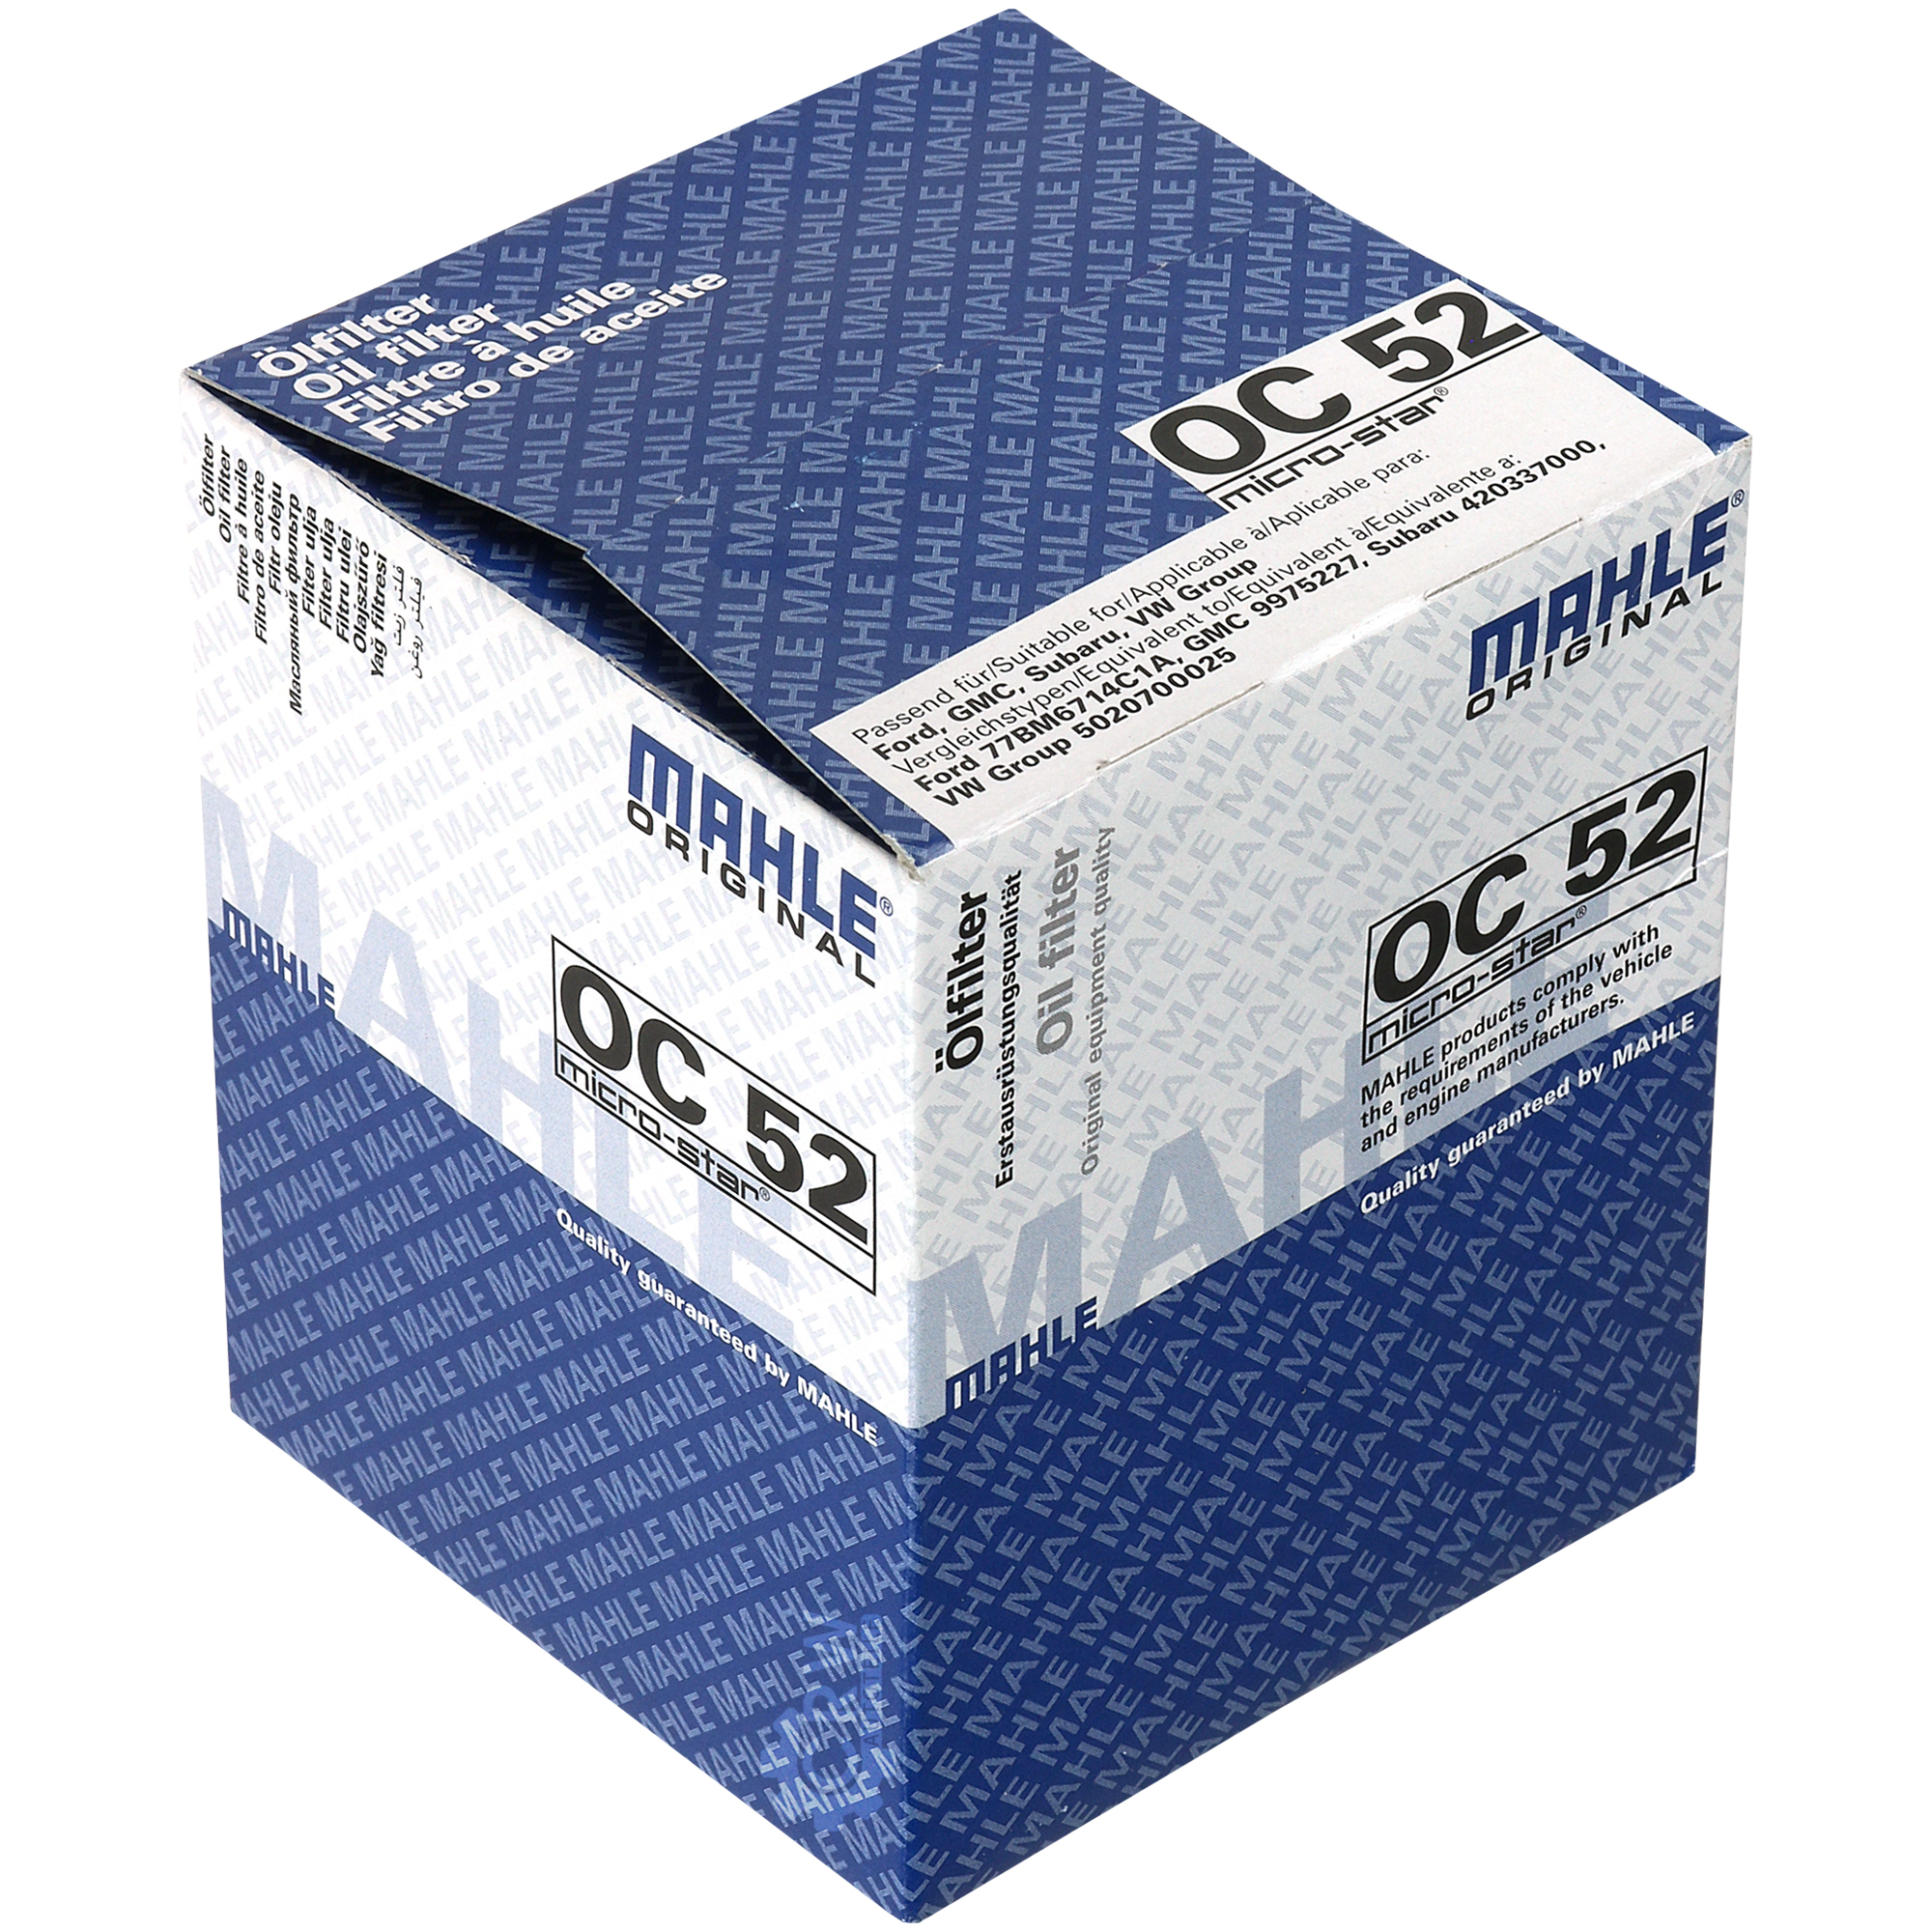 MAHLE / KNECHT Ölfilter OC 52 Oil Filter für Subaru XT Coupe Leone II